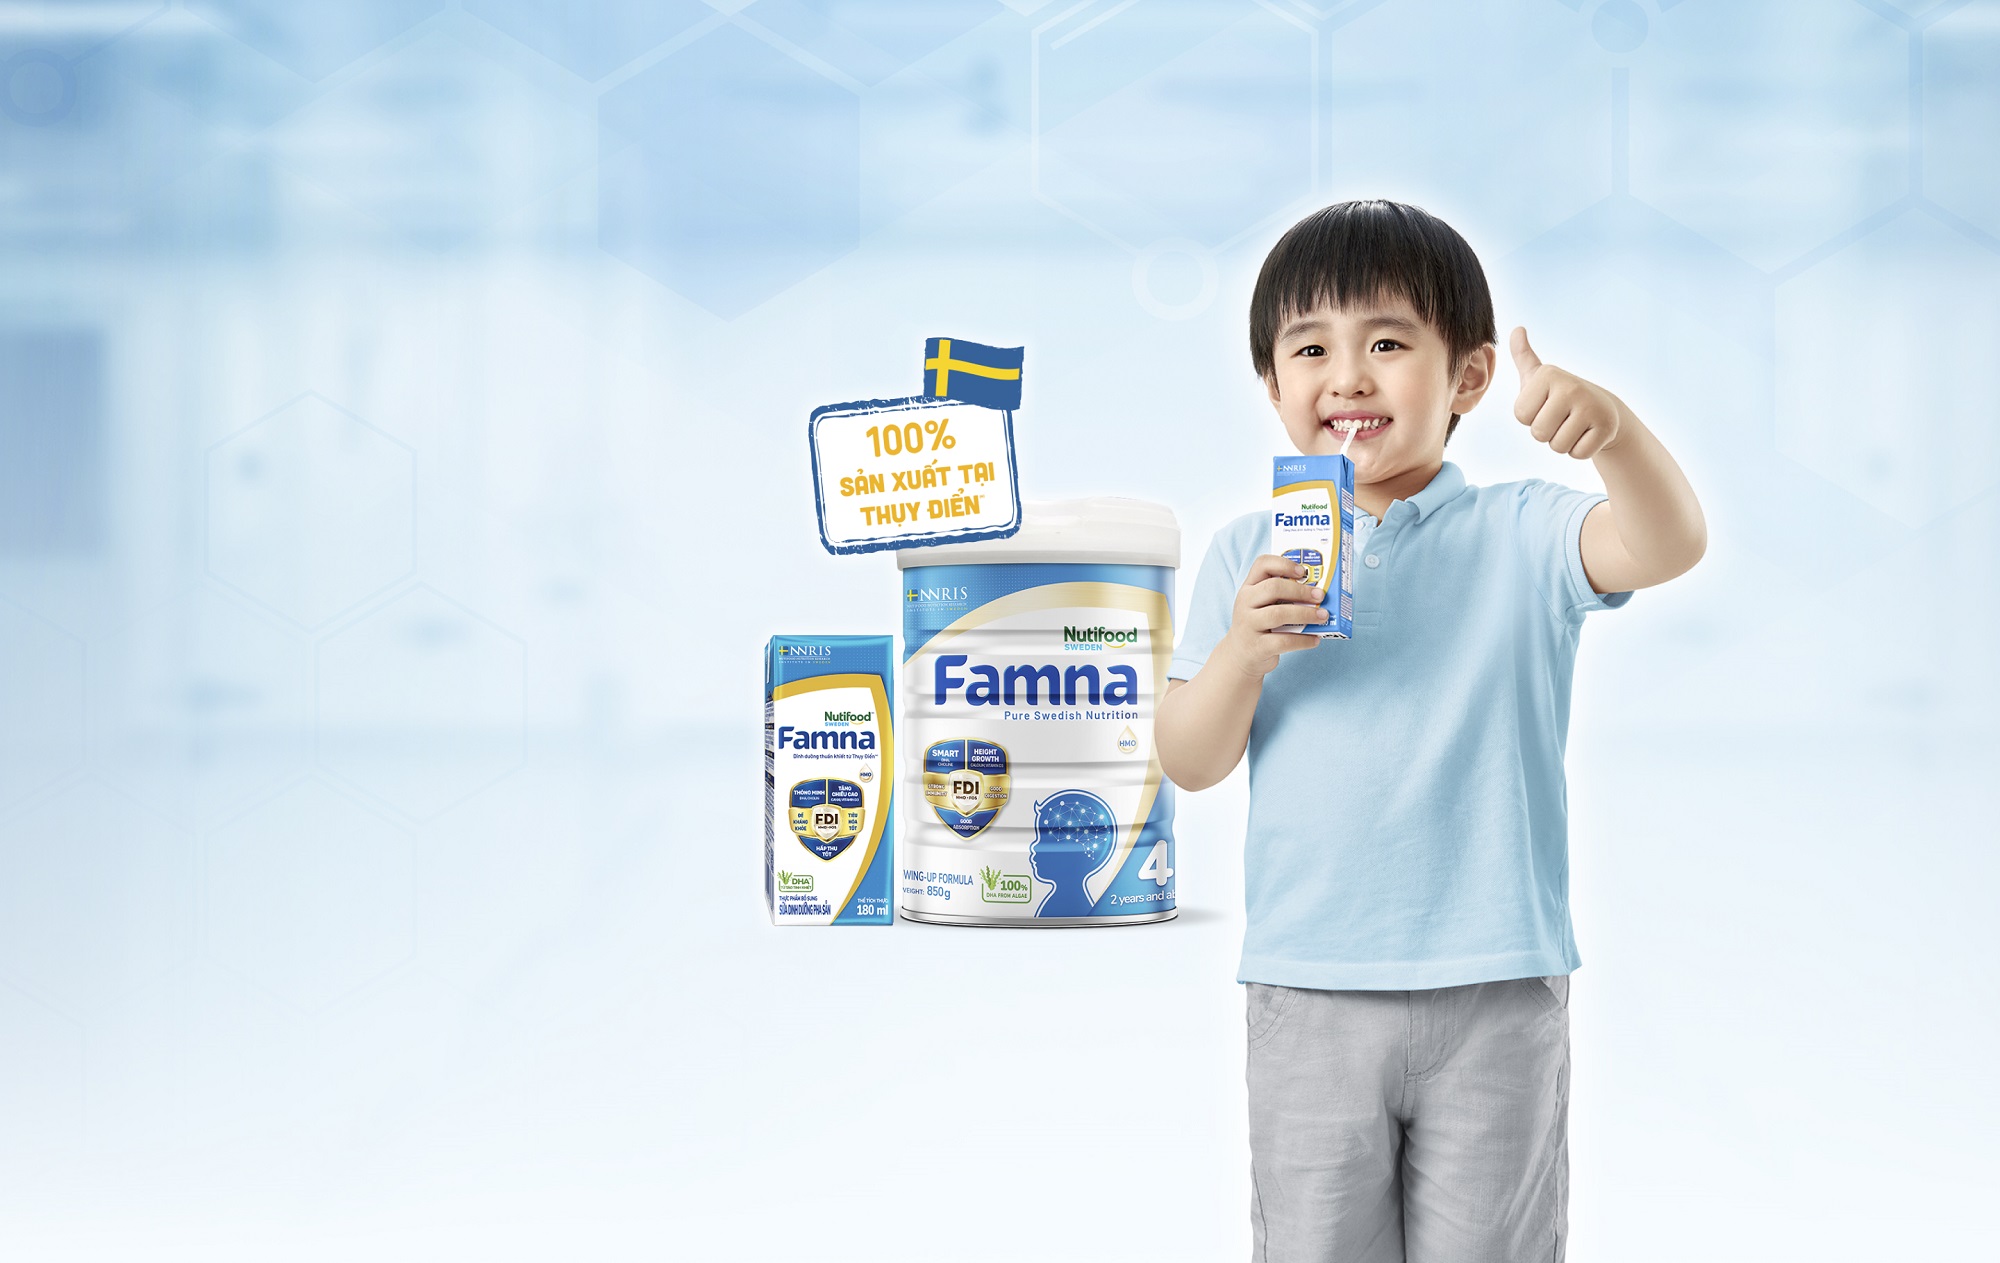 Famna <br> - Đề kháng khoẻ, tiêu hoá tốt